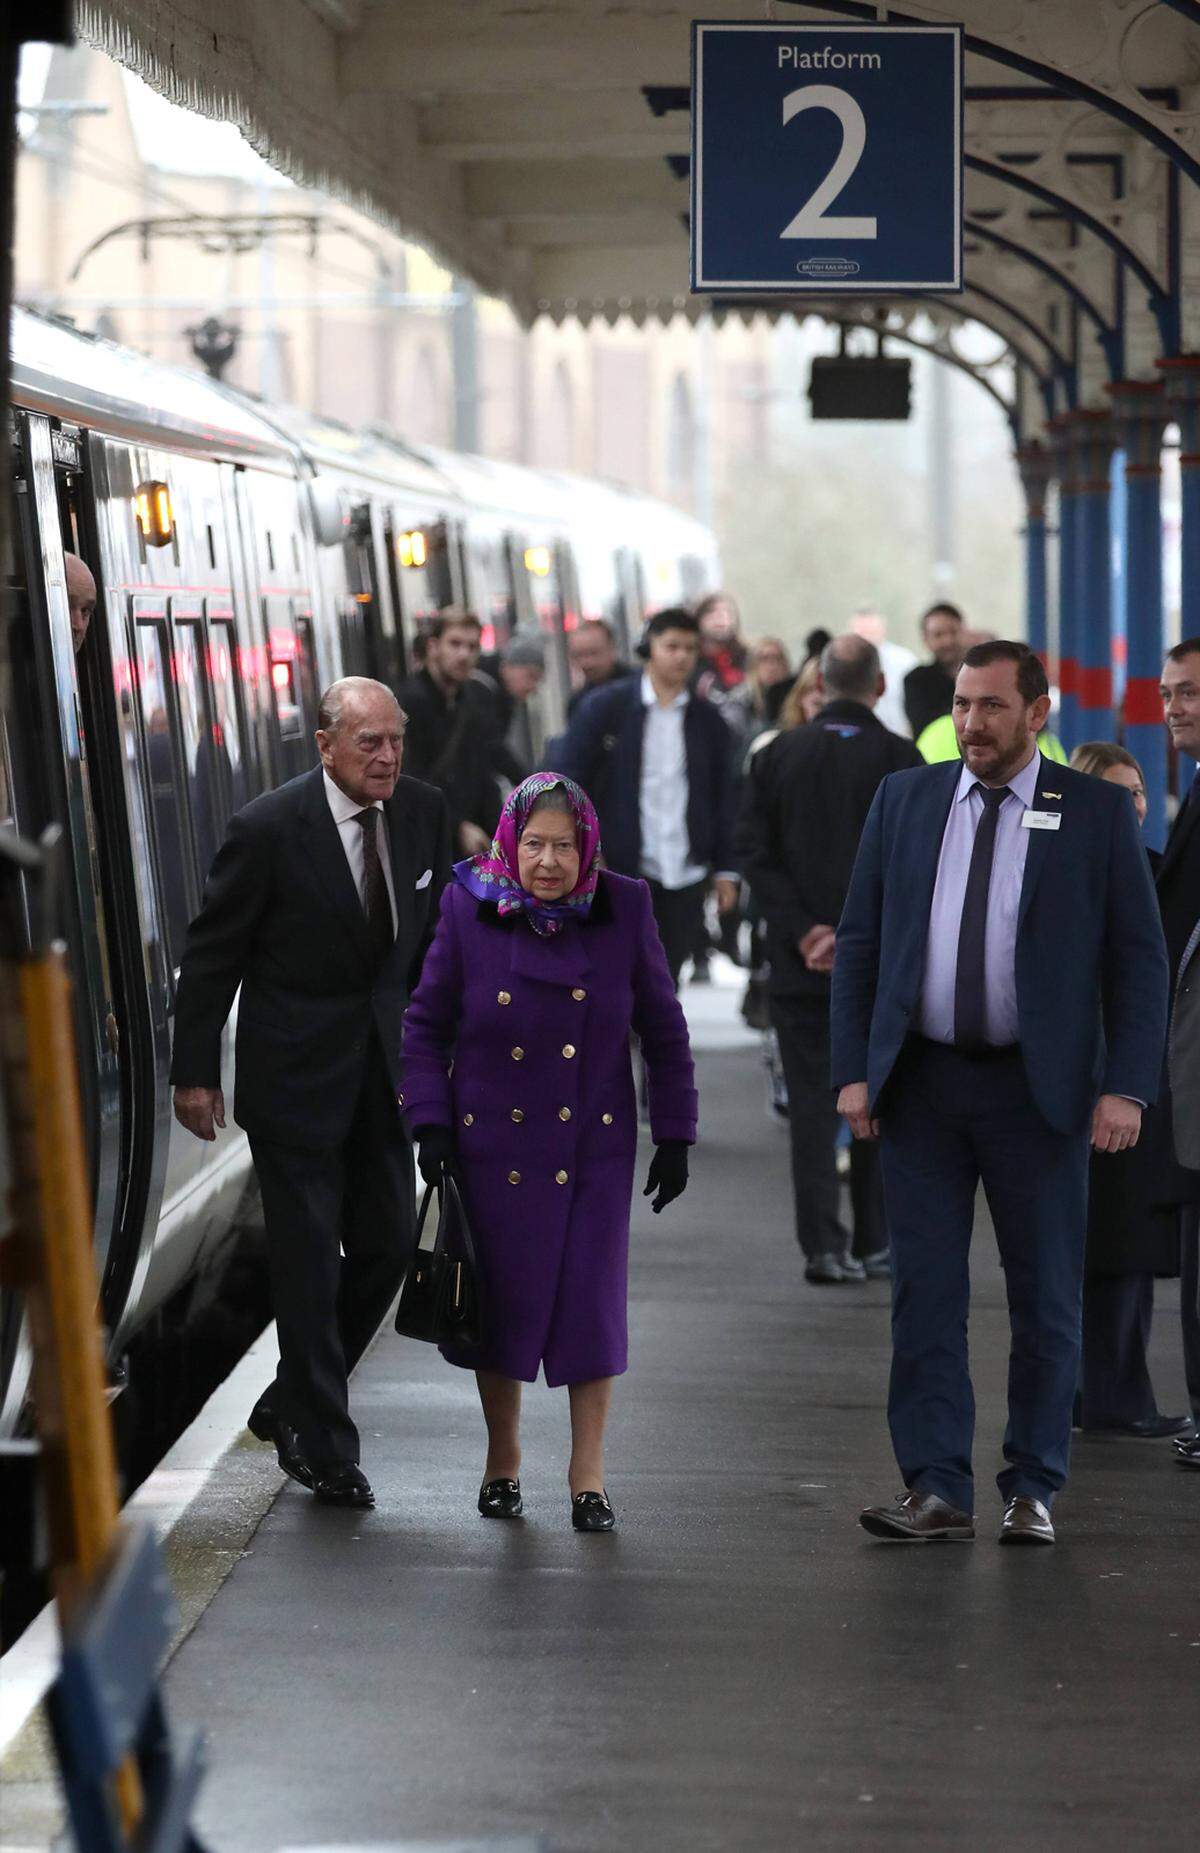 Queen Elizabeth reist traditionellerweise mit dem Zug an. Dafür mietet sie einen öffentlichen Zug nach Kings Lynn für sich, ihren Ehemann Prinz Philip und den wichtigsten Mitarbeitern. Während die Gäste am 24. erscheinen, reist die Königin bereits einige Tage vorher an um sich noch um den letzten Schliff zu kümmern.